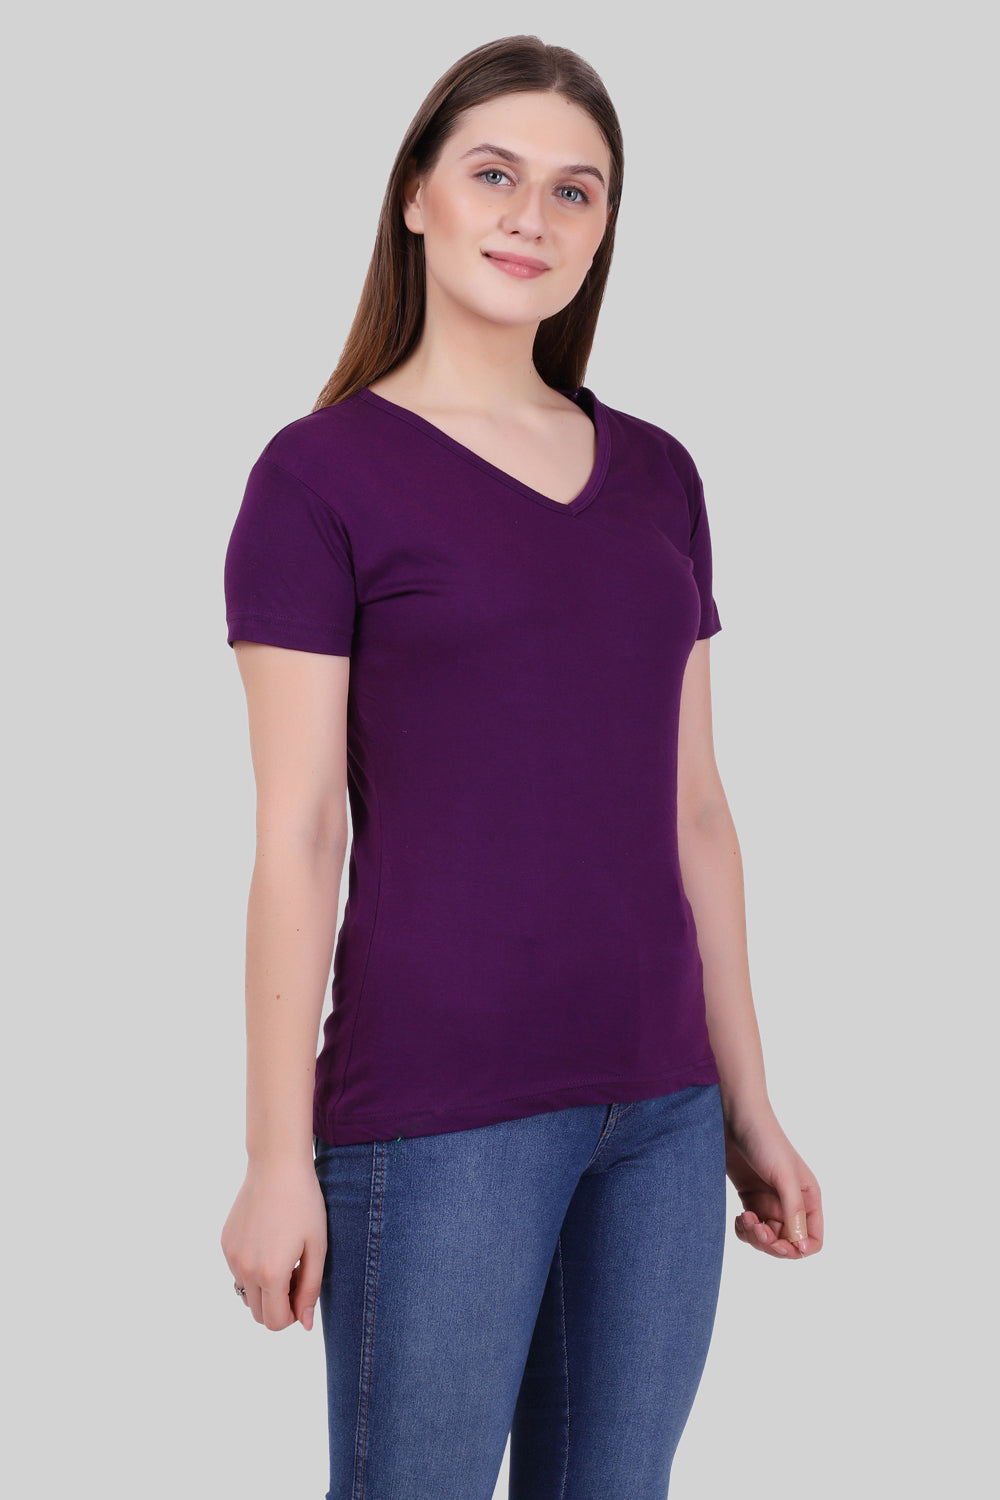 Women's Cotton Plain V Neck Half Sleeve Purple Color T-Shirt